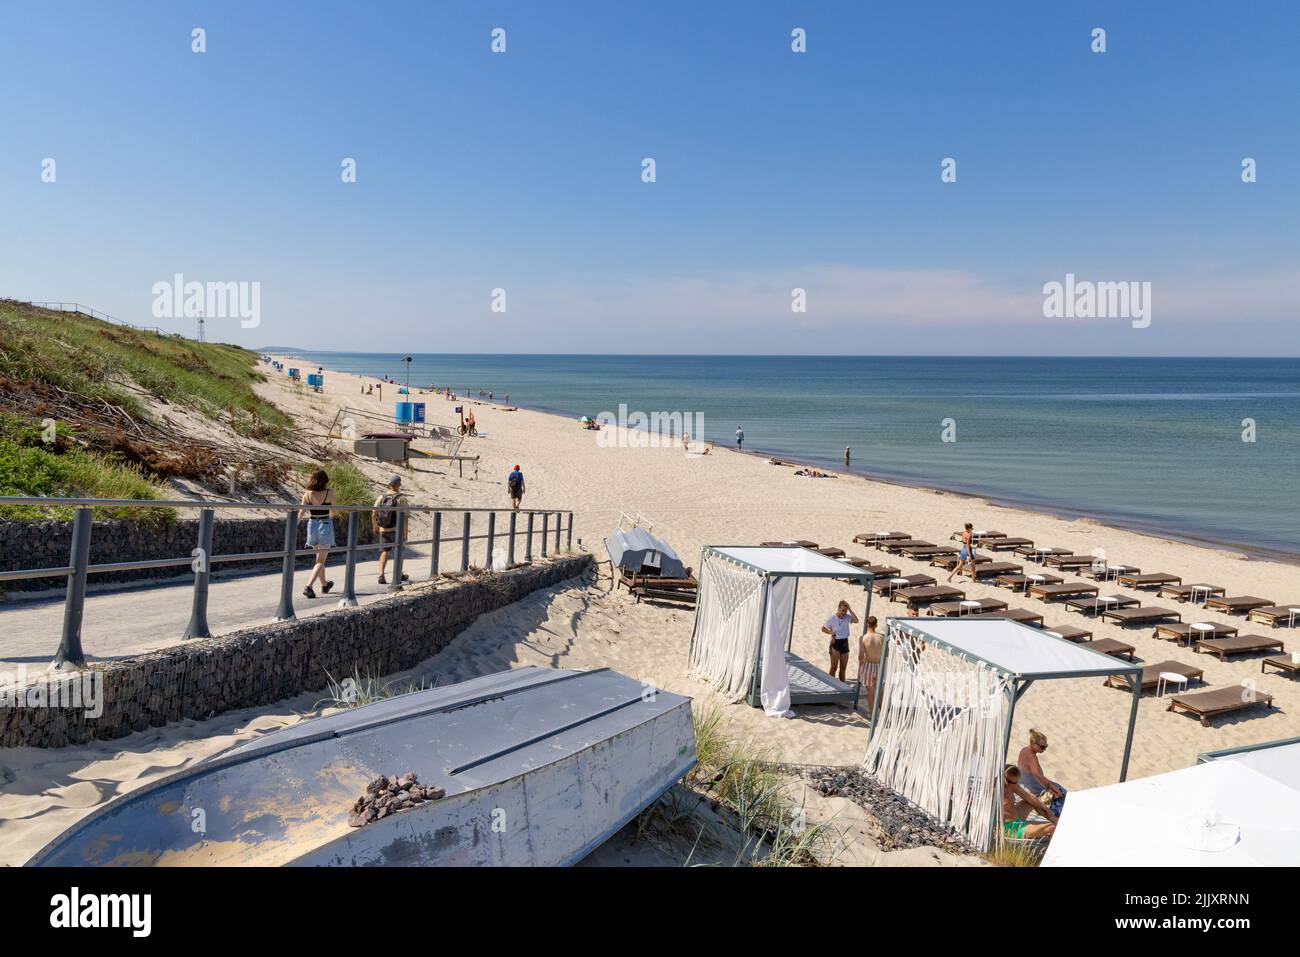 Litauen Strand; Menschen genießen den Sandstrand im Sommer an der Ostseeküste an der Kurischen Nehrung, Litauen, Europa Stockfoto